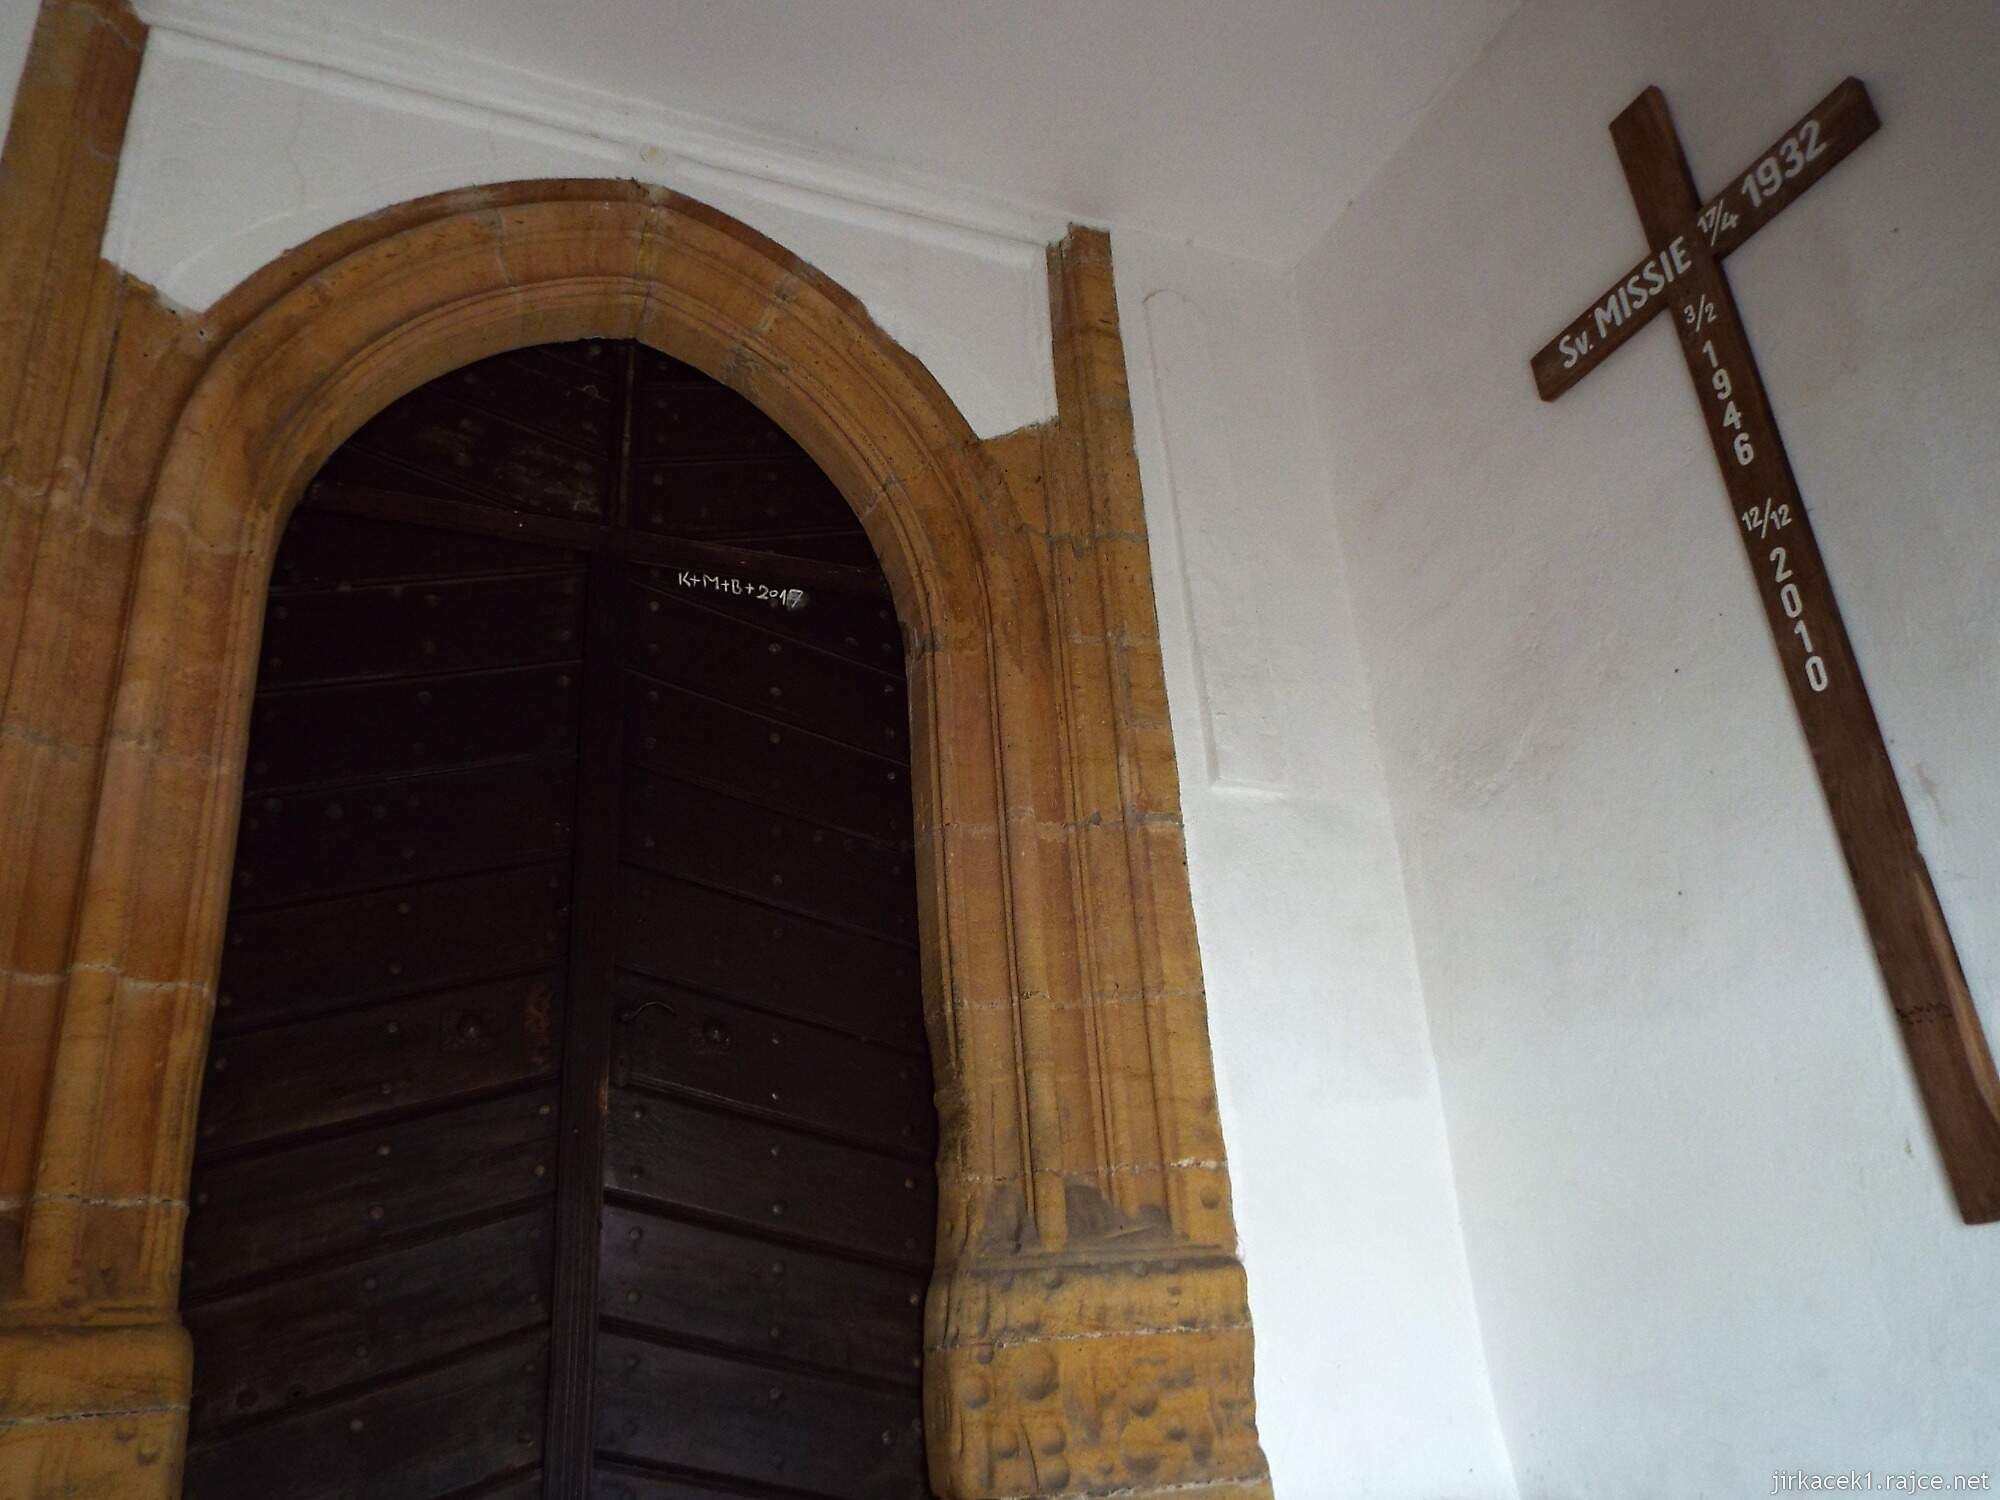 17 - Letovice - Kostel sv. Prokopa 16 - misijní kříž u vchodu